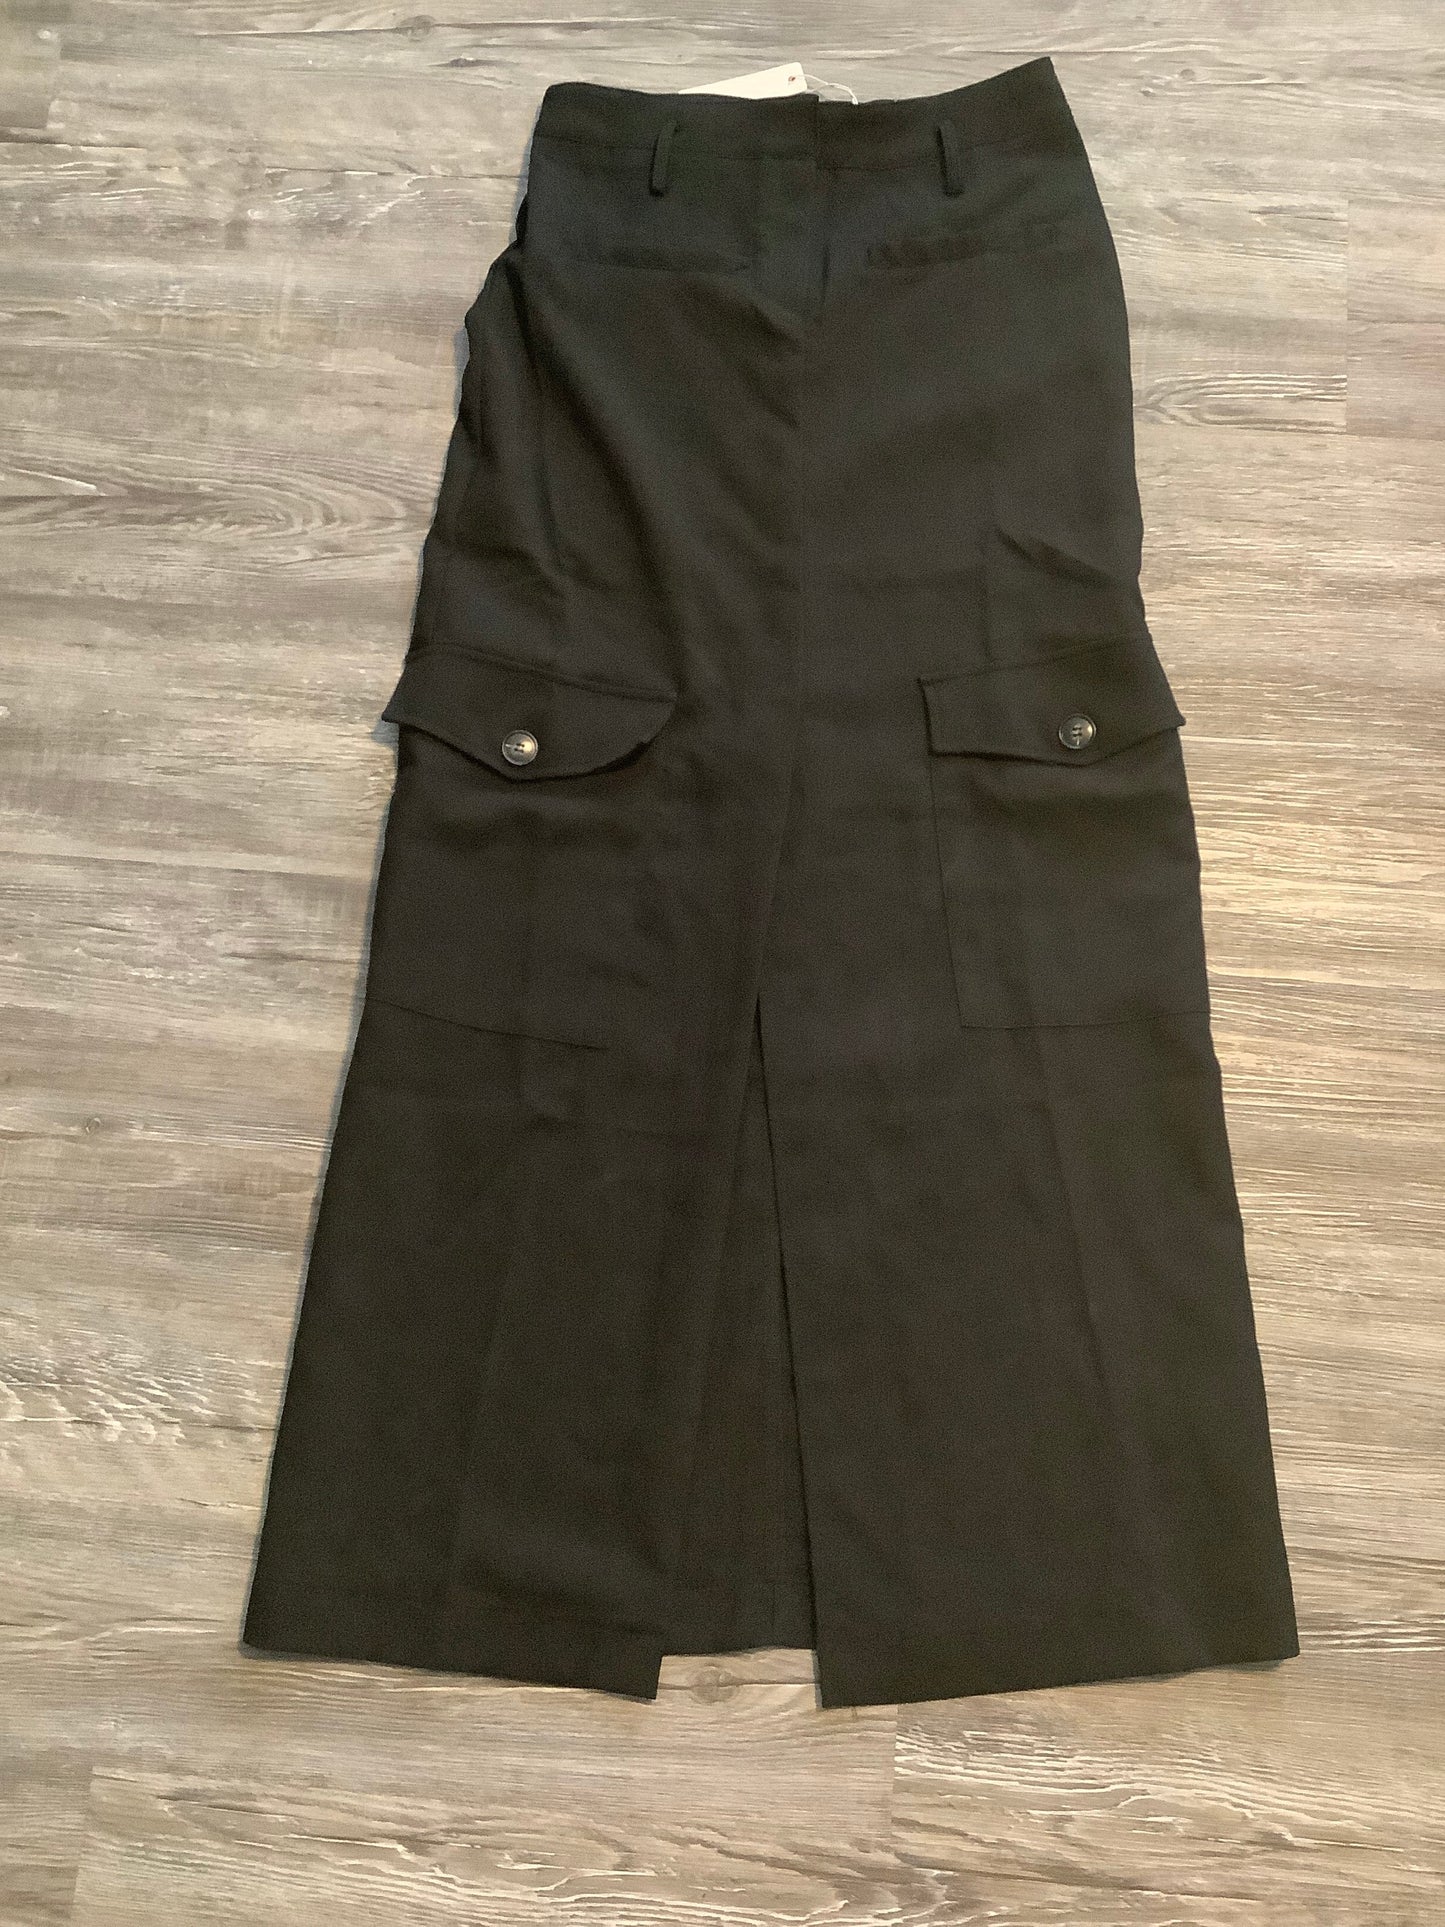 Black Skirt Maxi Olivaceous, Size M